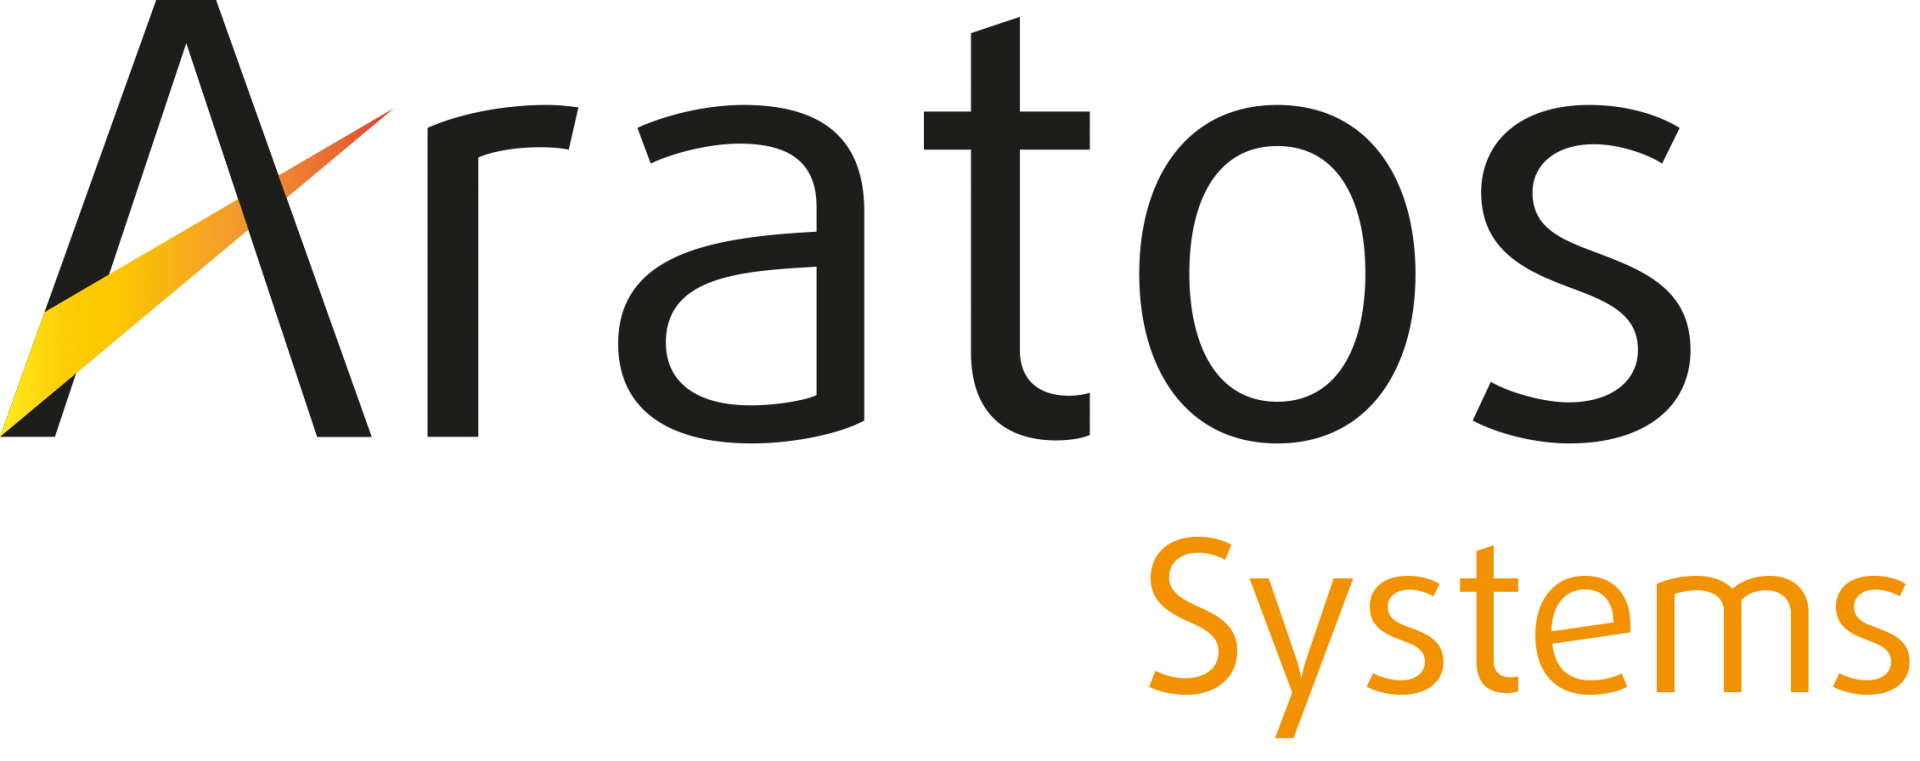 Aratos Group Logo Plus Systems Cmyk 20211125113334